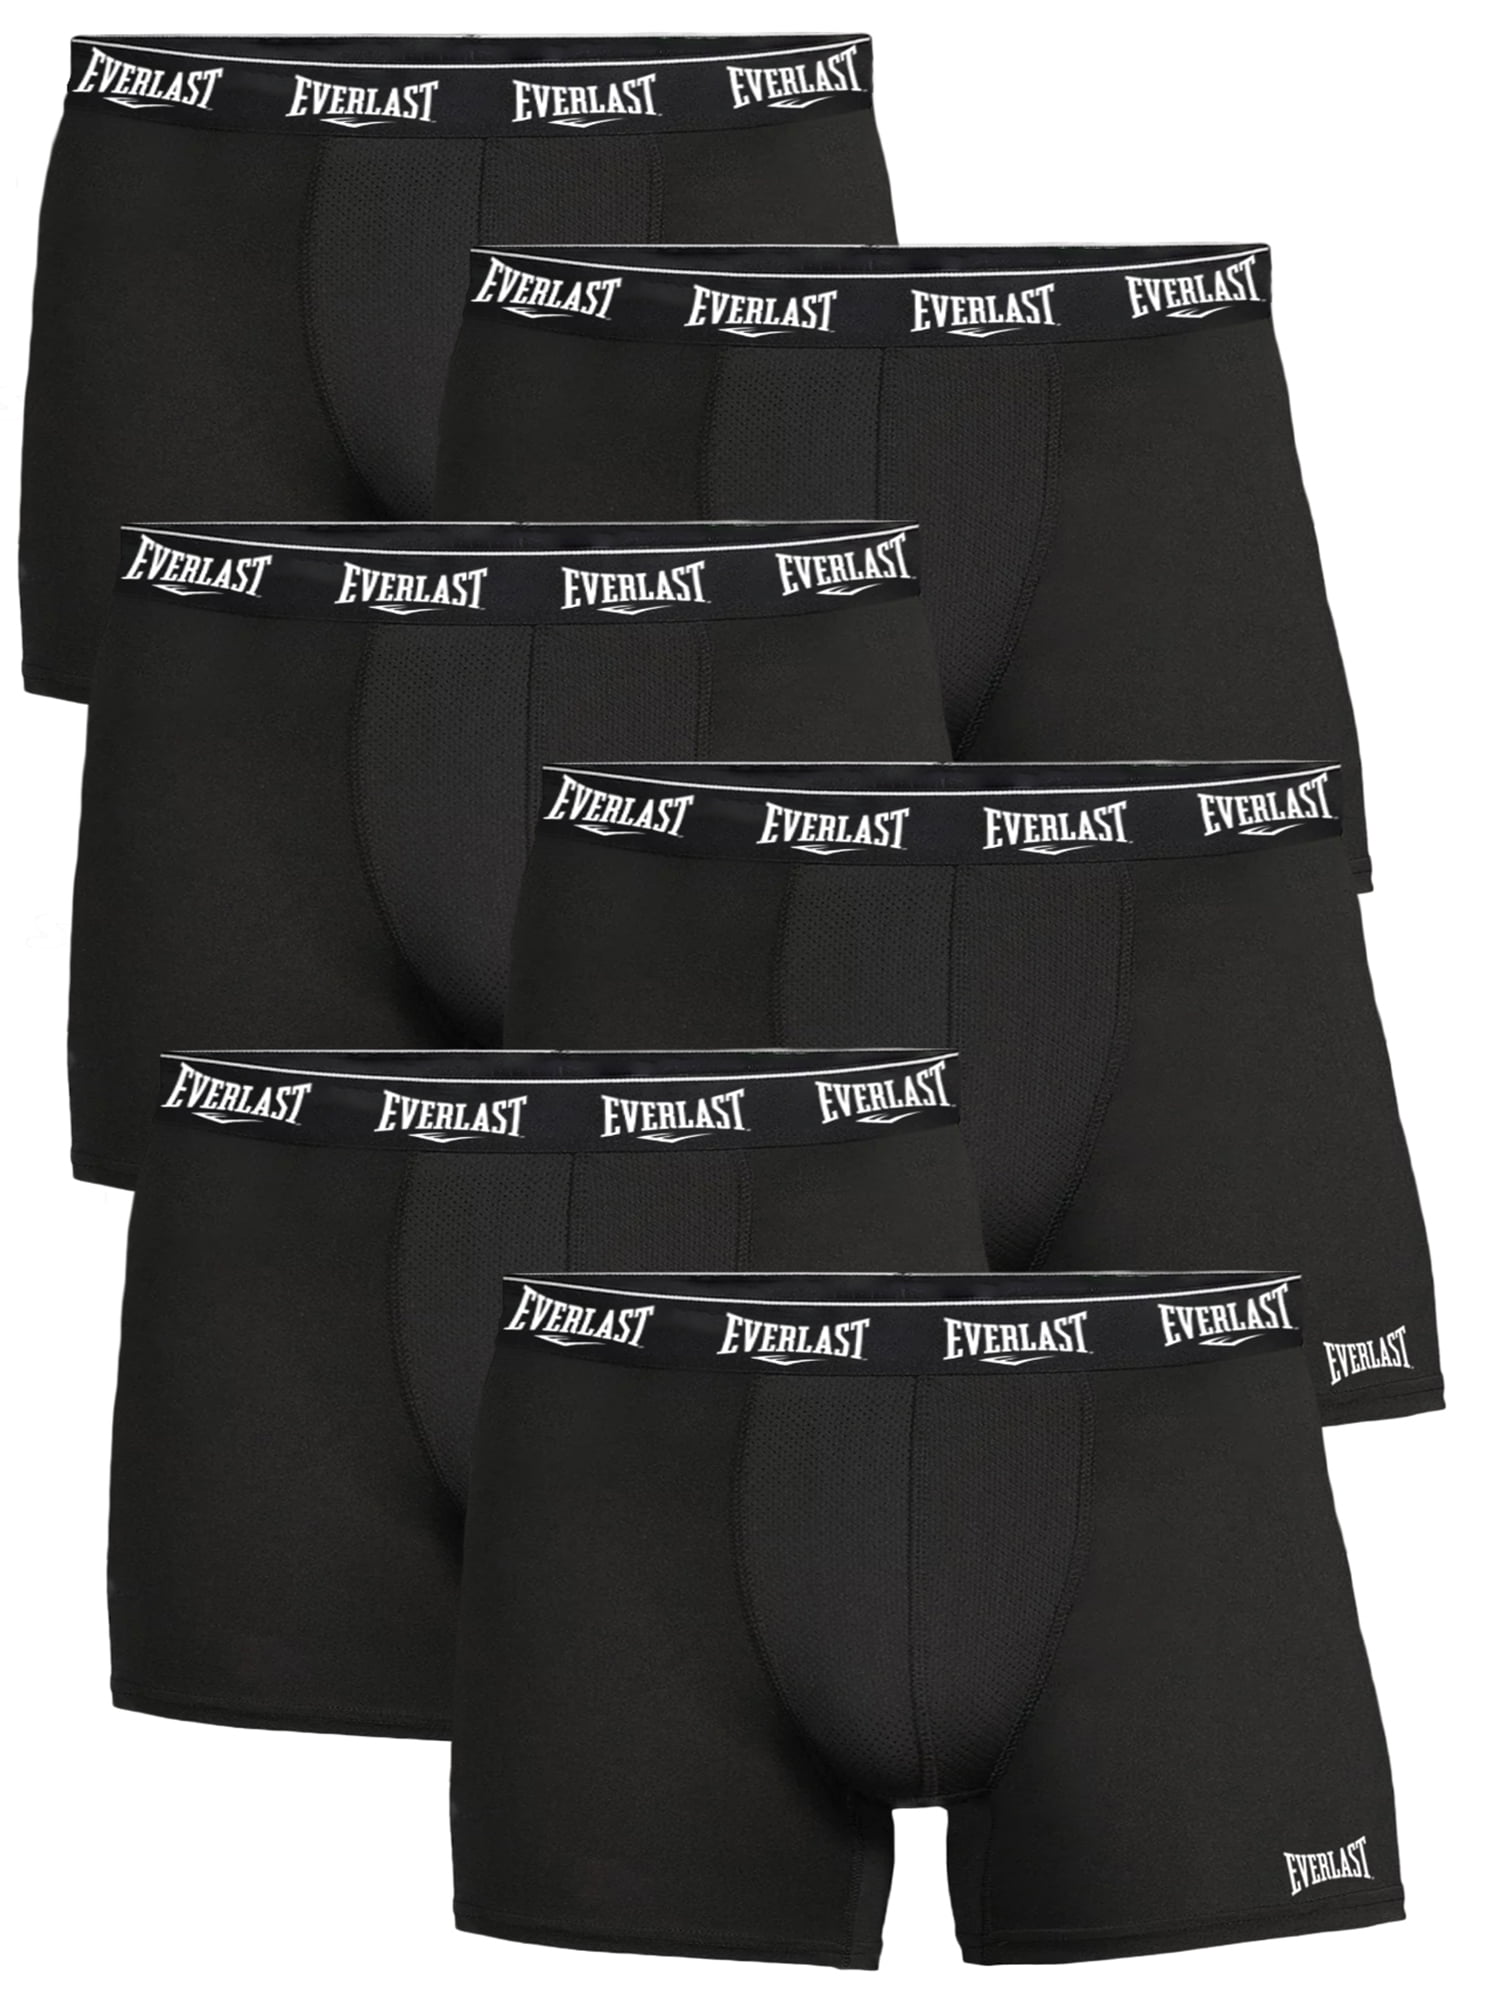 Everlast Men's Trunks Breathable Cotton Underwear Boxers for Men, Black/Lime/Chg  XL 6-Pack 